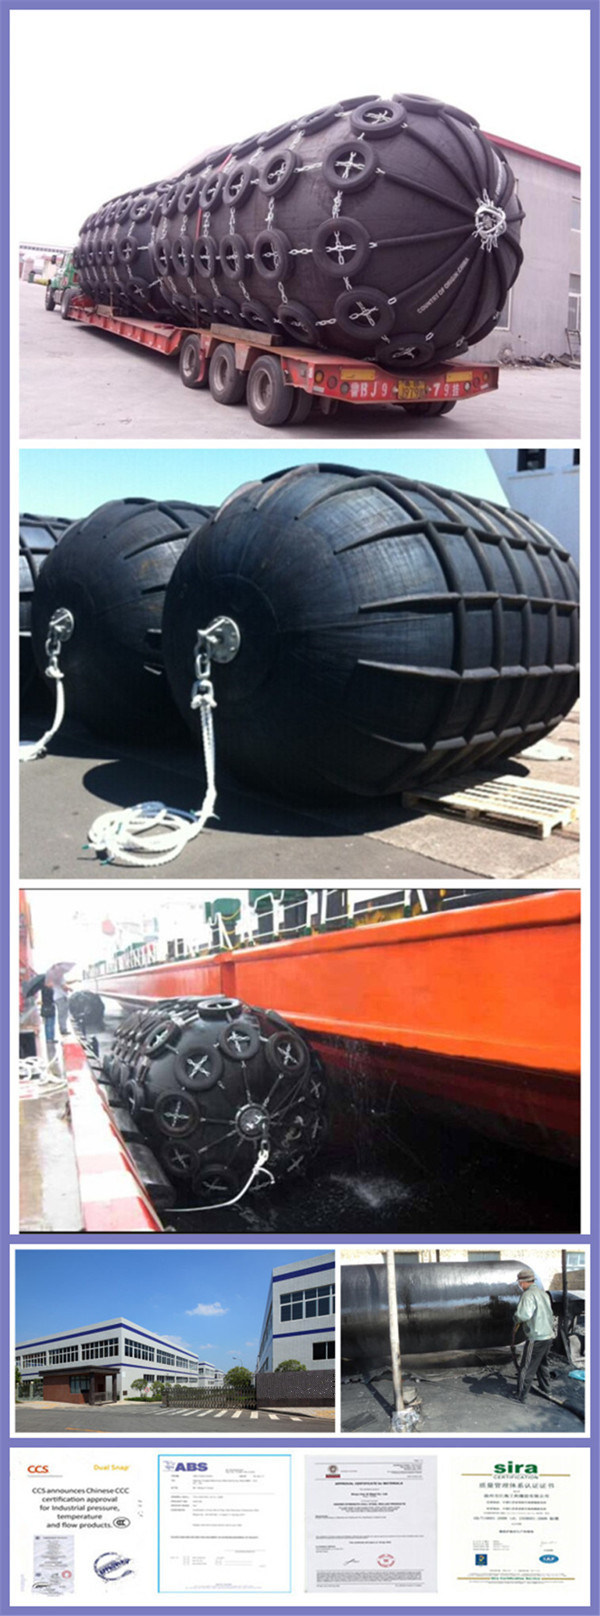 Ship to Ship Dock Fenders Bunkering Yokohama Pneumatic Ship Fenders